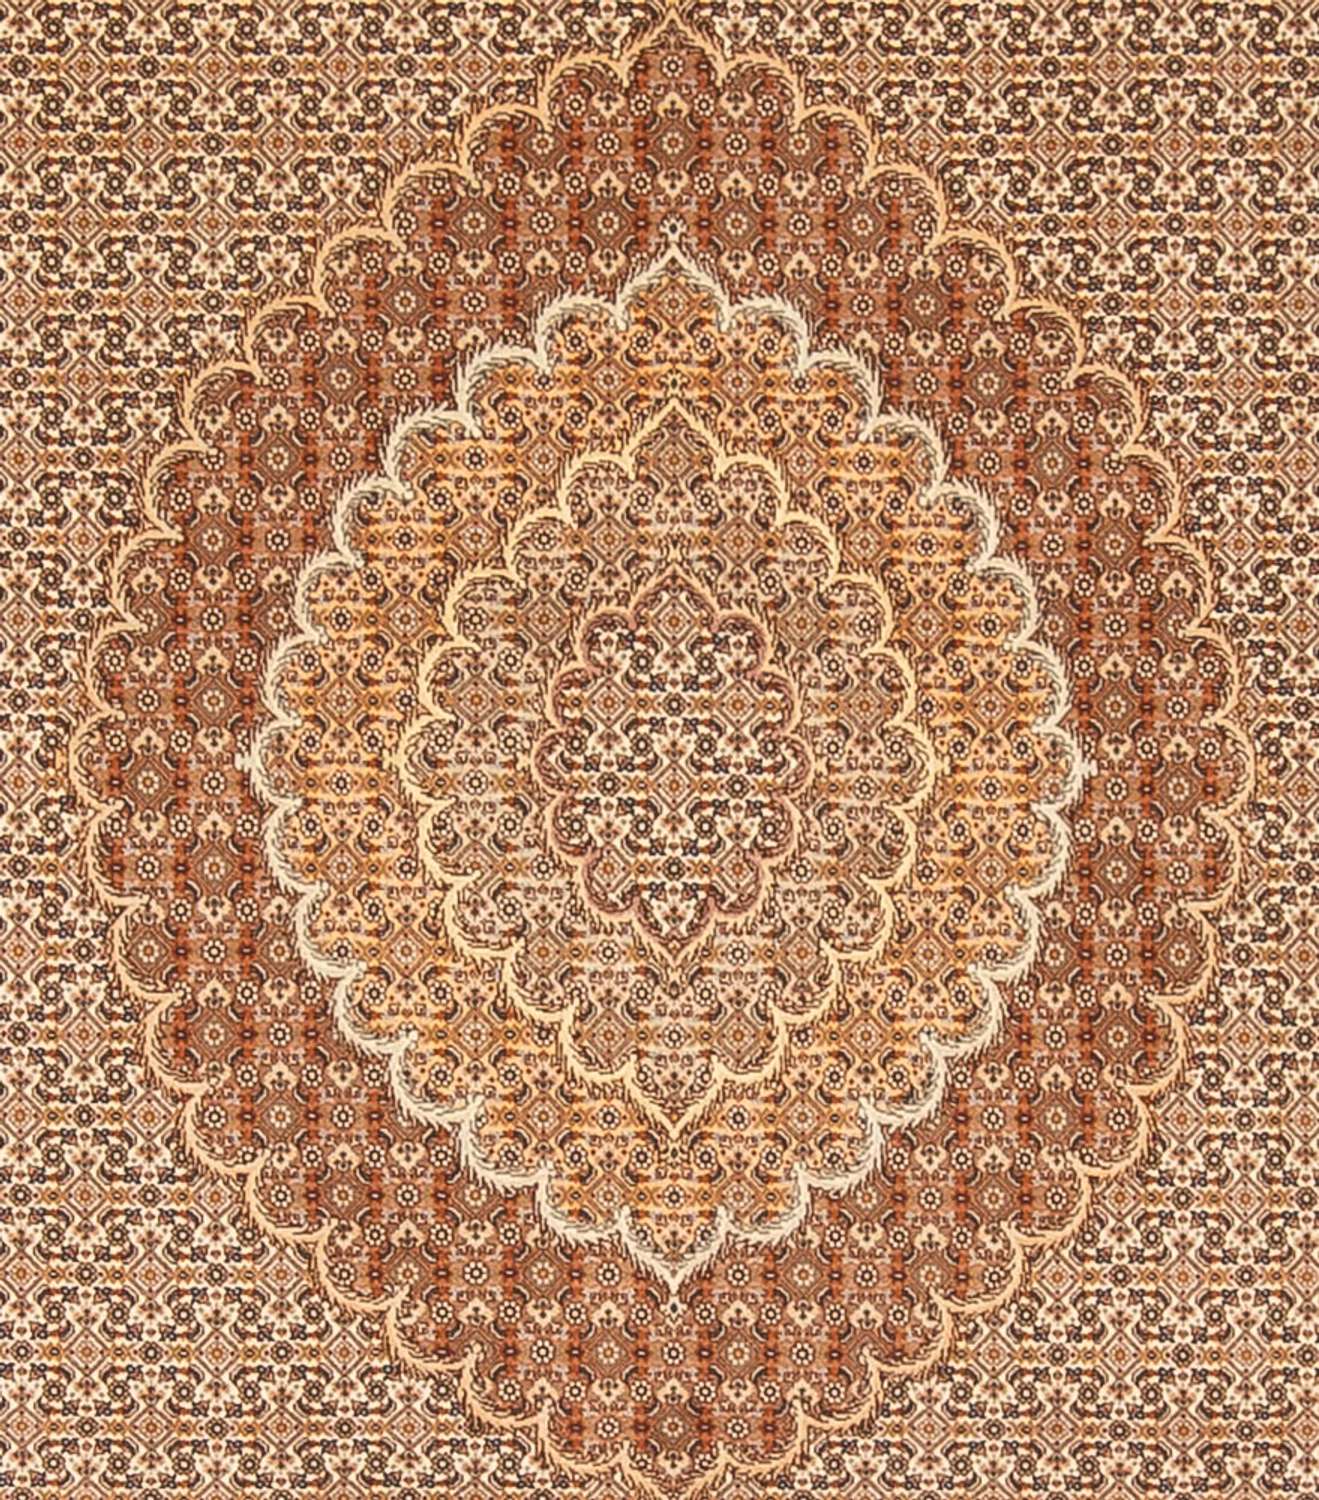 Tapete Persa - Tabriz - 290 x 250 cm - castanho claro